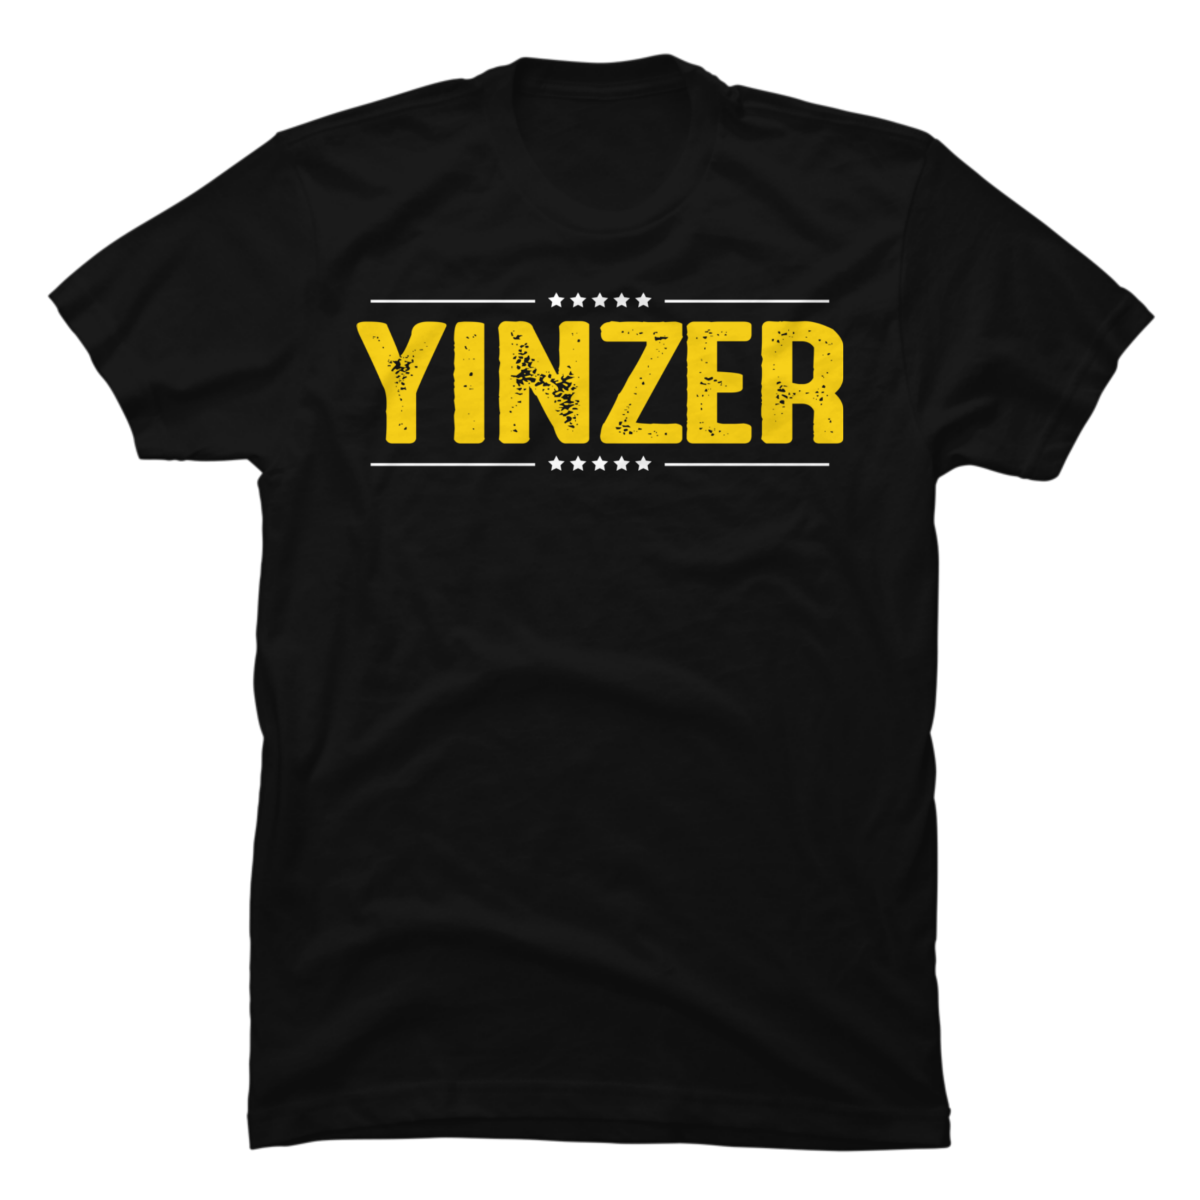 yinzer shirts